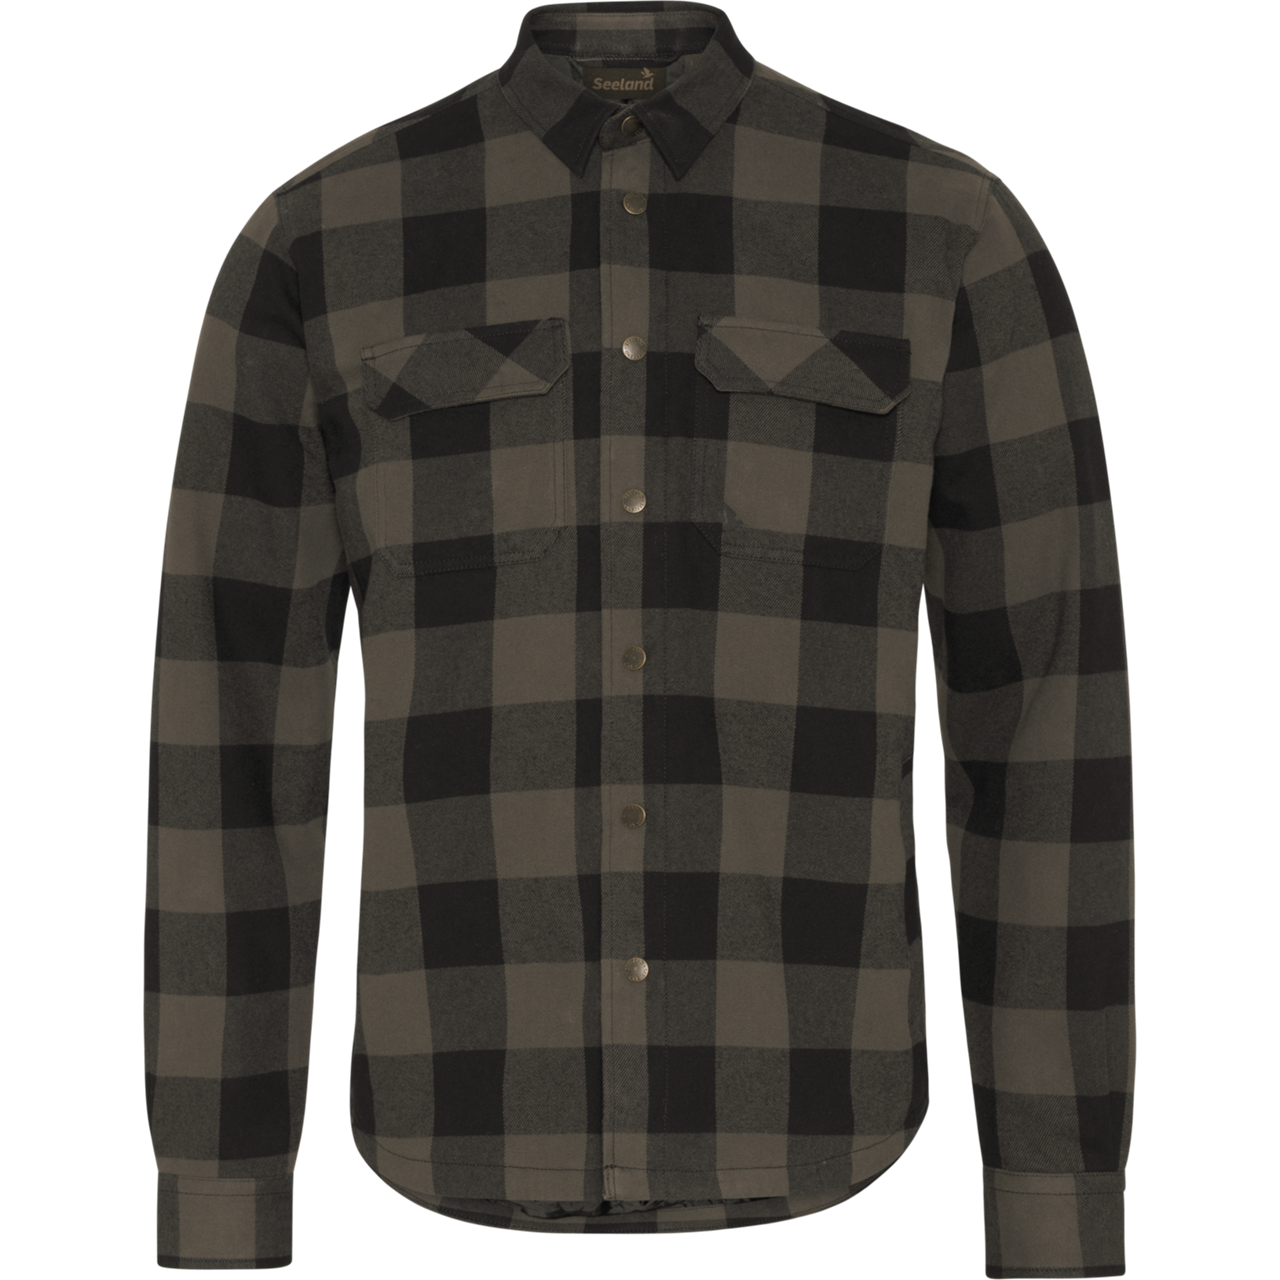 Seeland Canada skjorte limited edition (Grey Check, M)